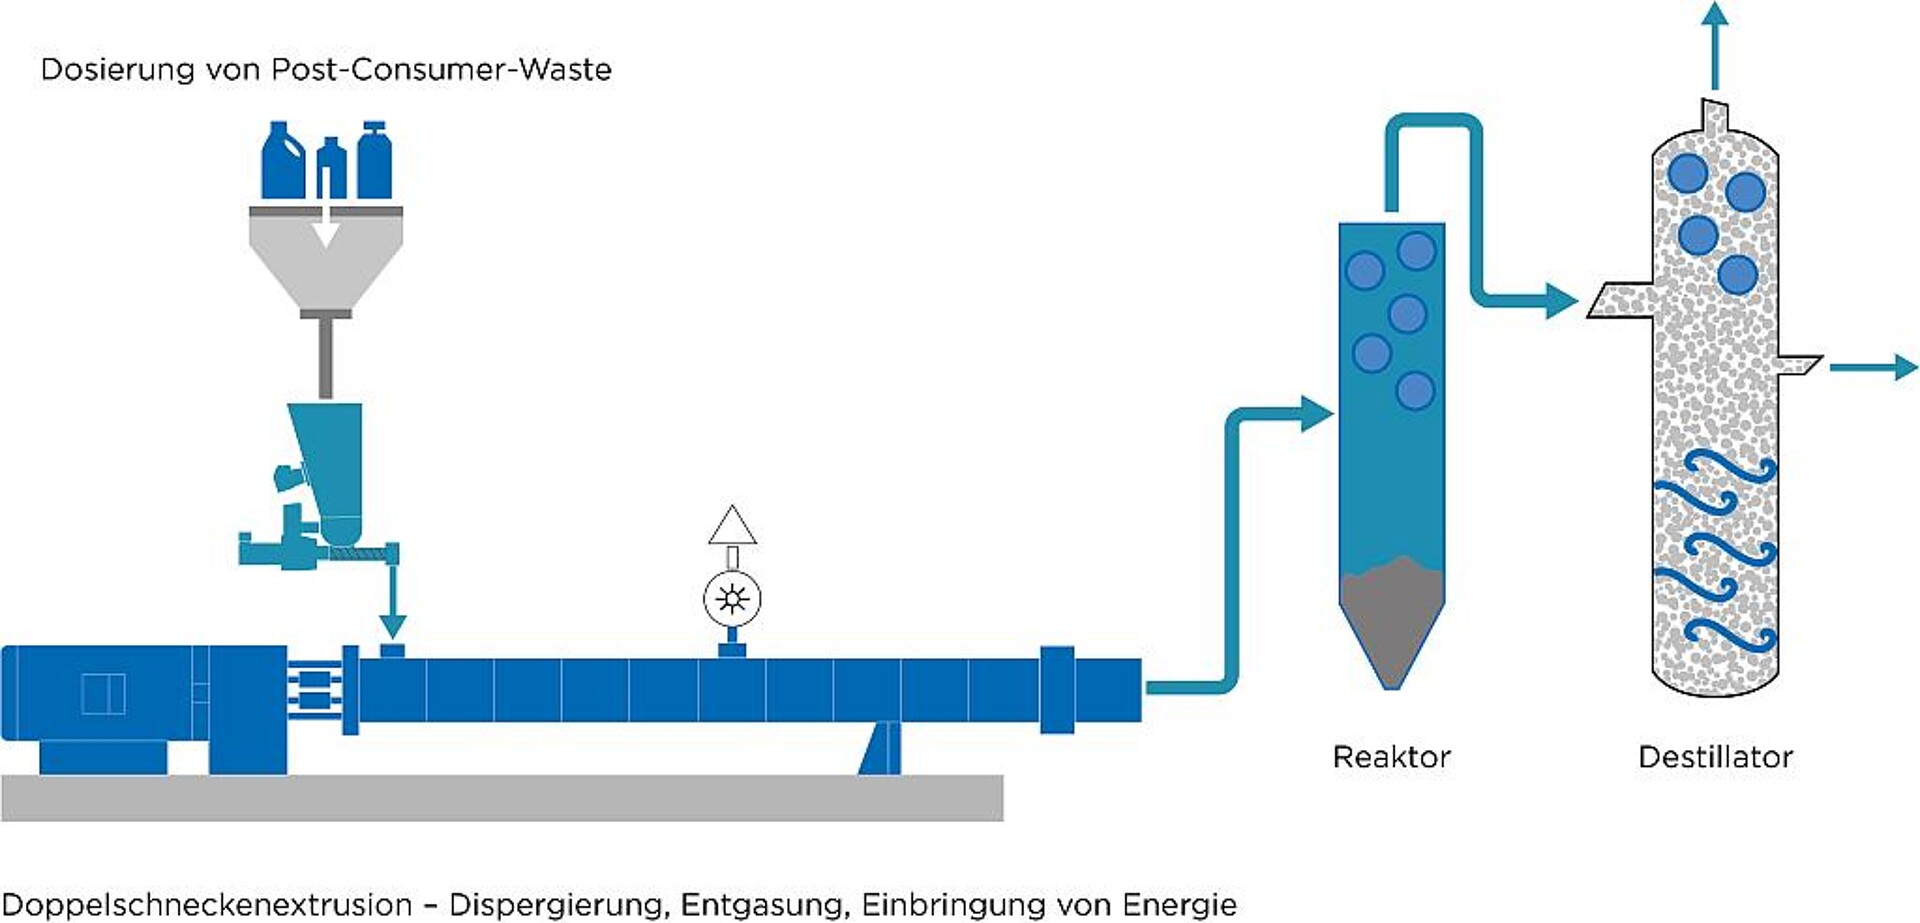 Das chemische Recycling gilt als vielversprechender Prozess, um gemischte Kunststoffabfälle sowohl technisch als auch ökonomisch sinnvoll rezyklieren zu können. (Abb.: Coperion)